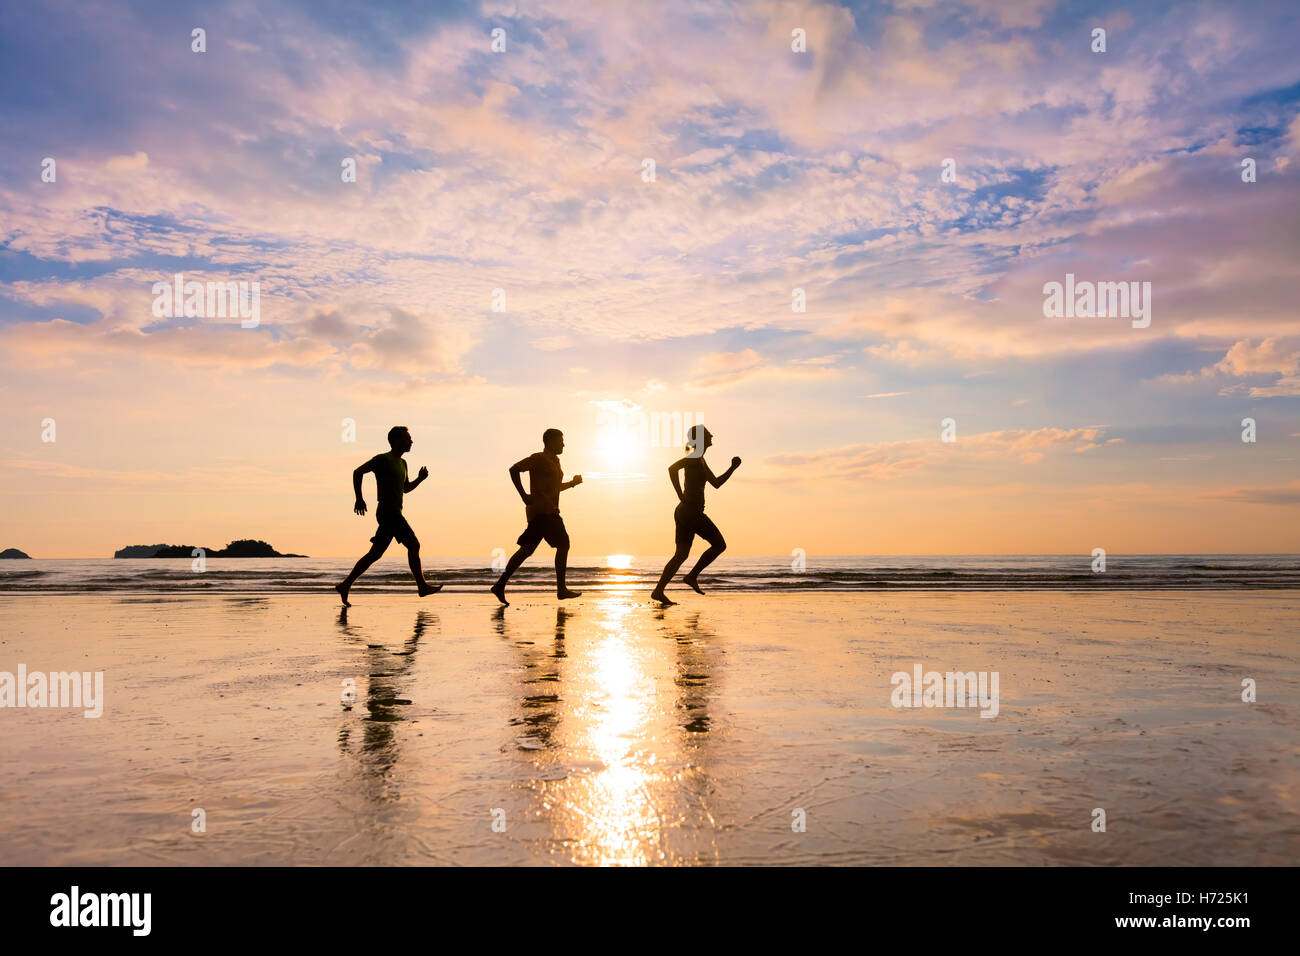 Gruppe von drei Jogger laufen am Strand im Sommer bei Sonnenuntergang - Konzept über gesunde sportliche Lifestyle und community Stockfoto